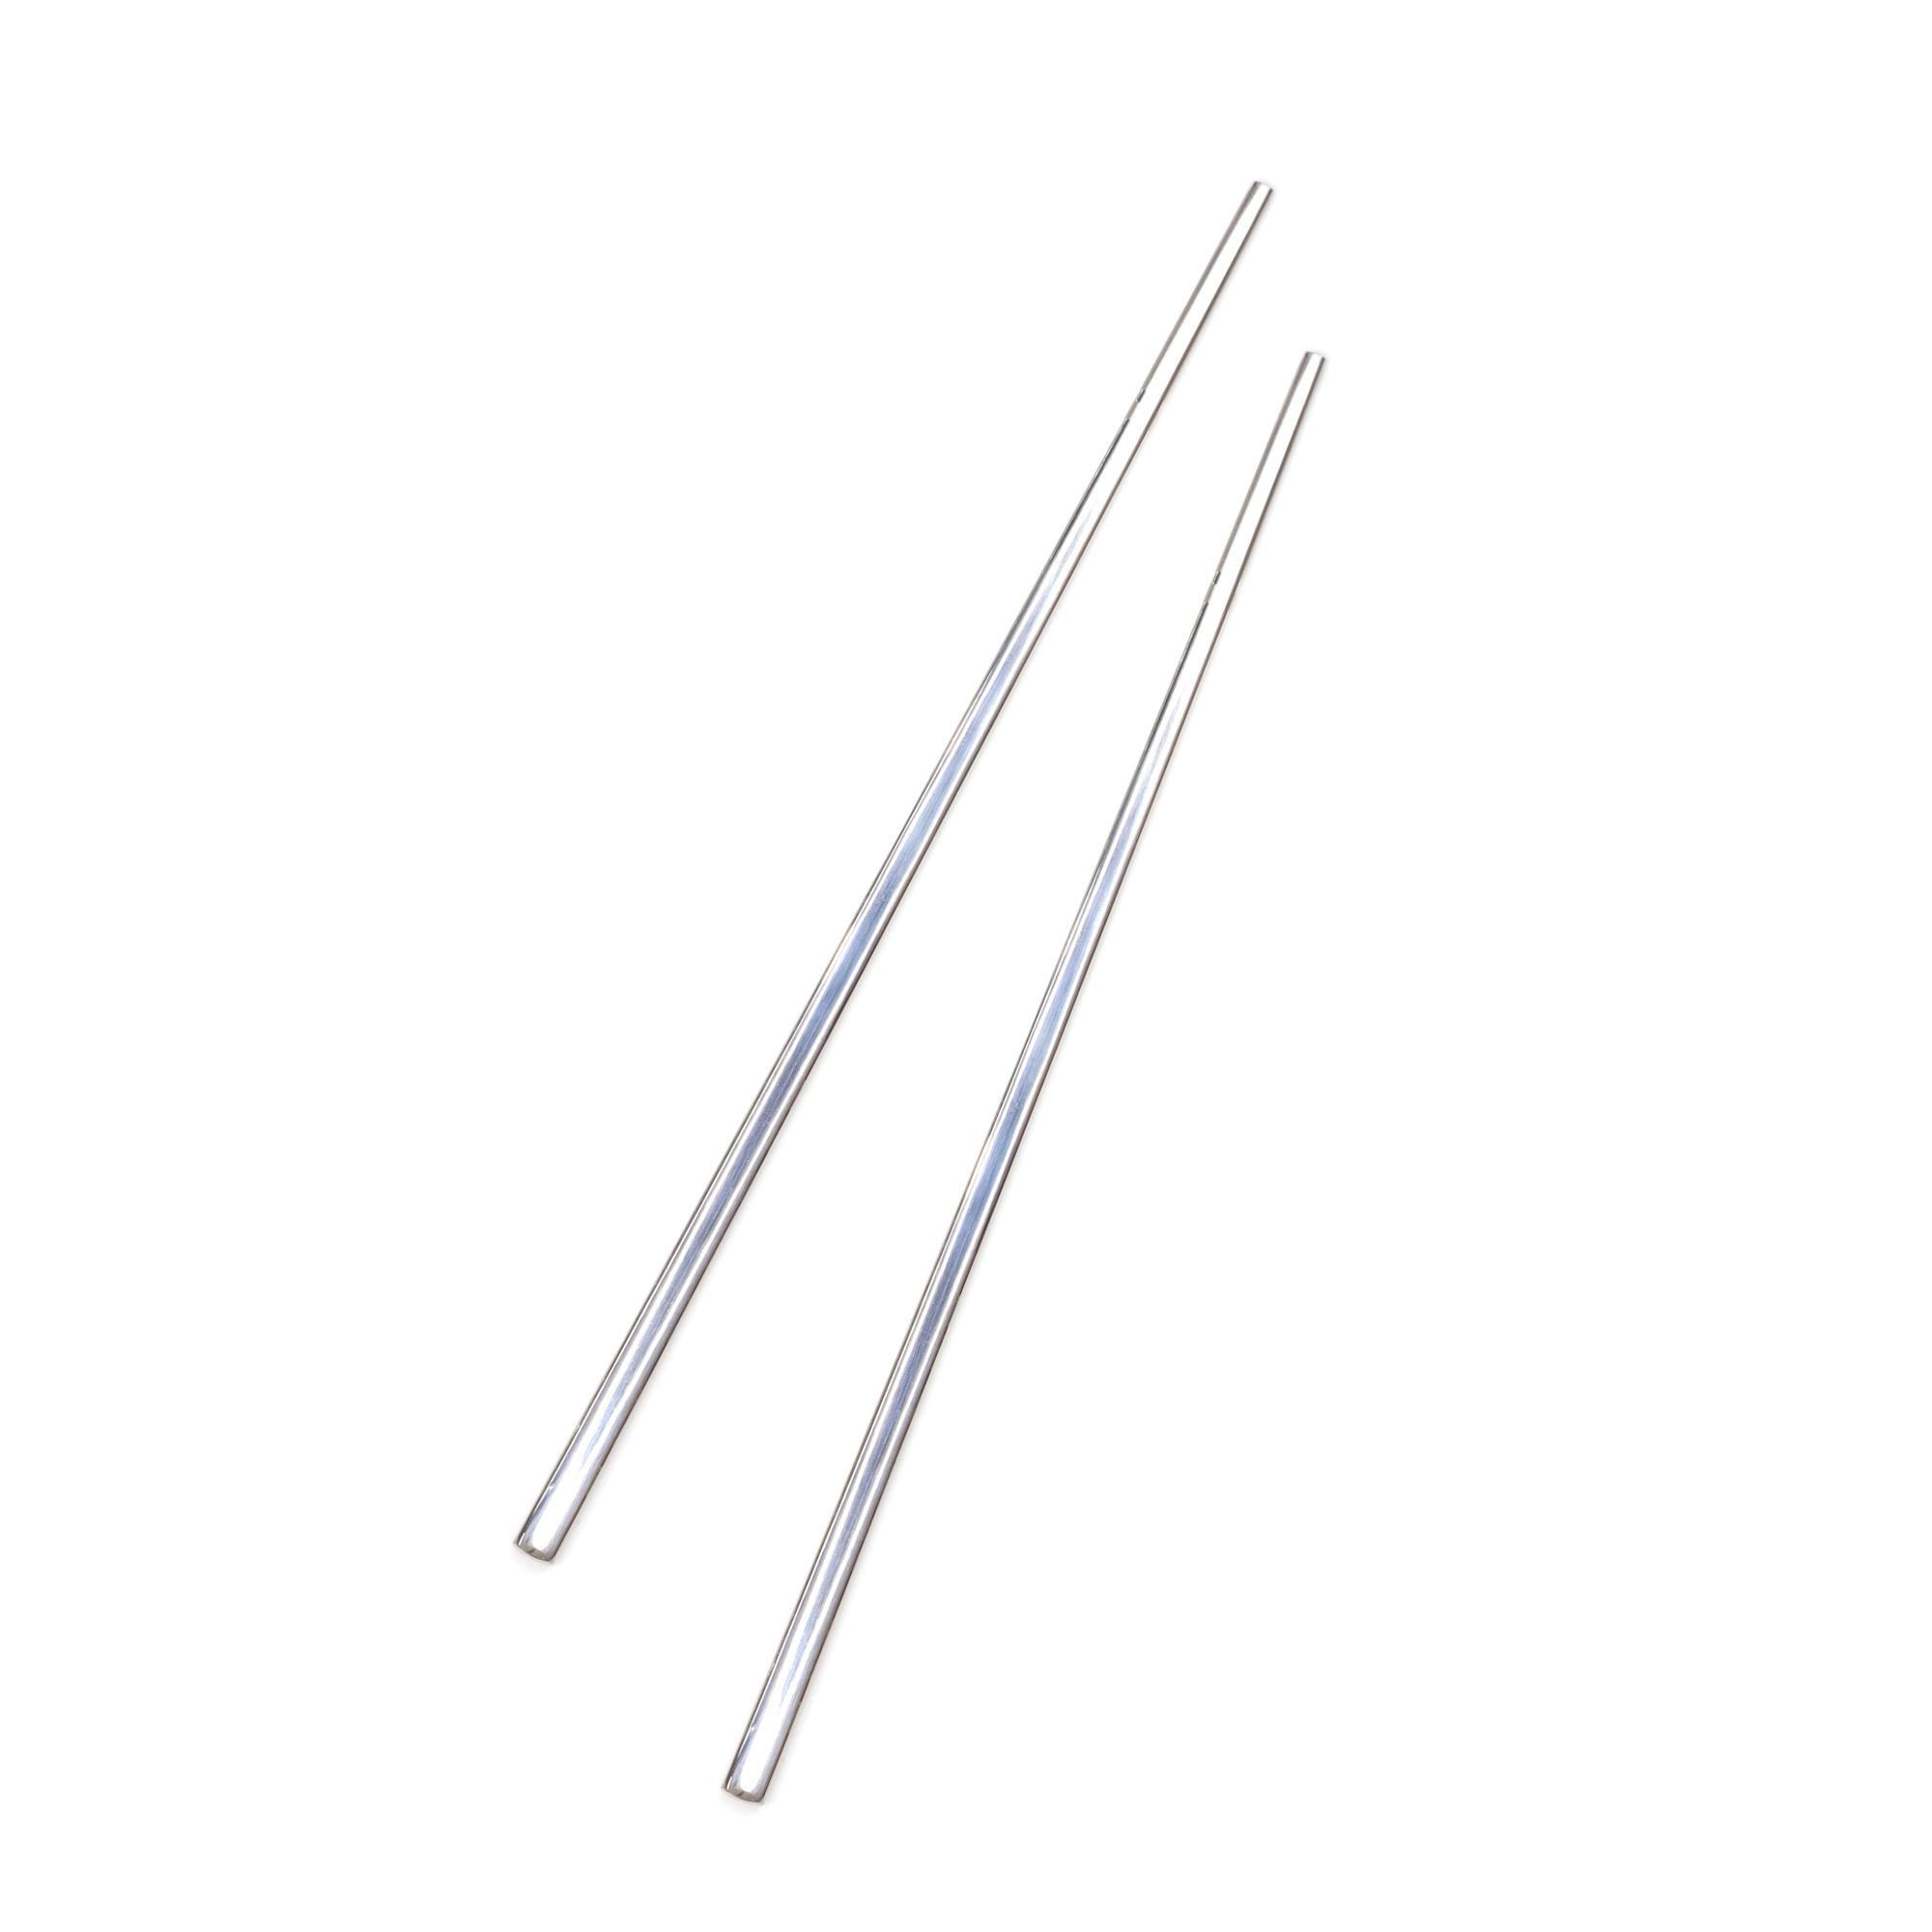 Çok Kullanımlık Paslanmaz Çelik Çin Çubuğu (Chopsticks) 23 cm - 2 Adet